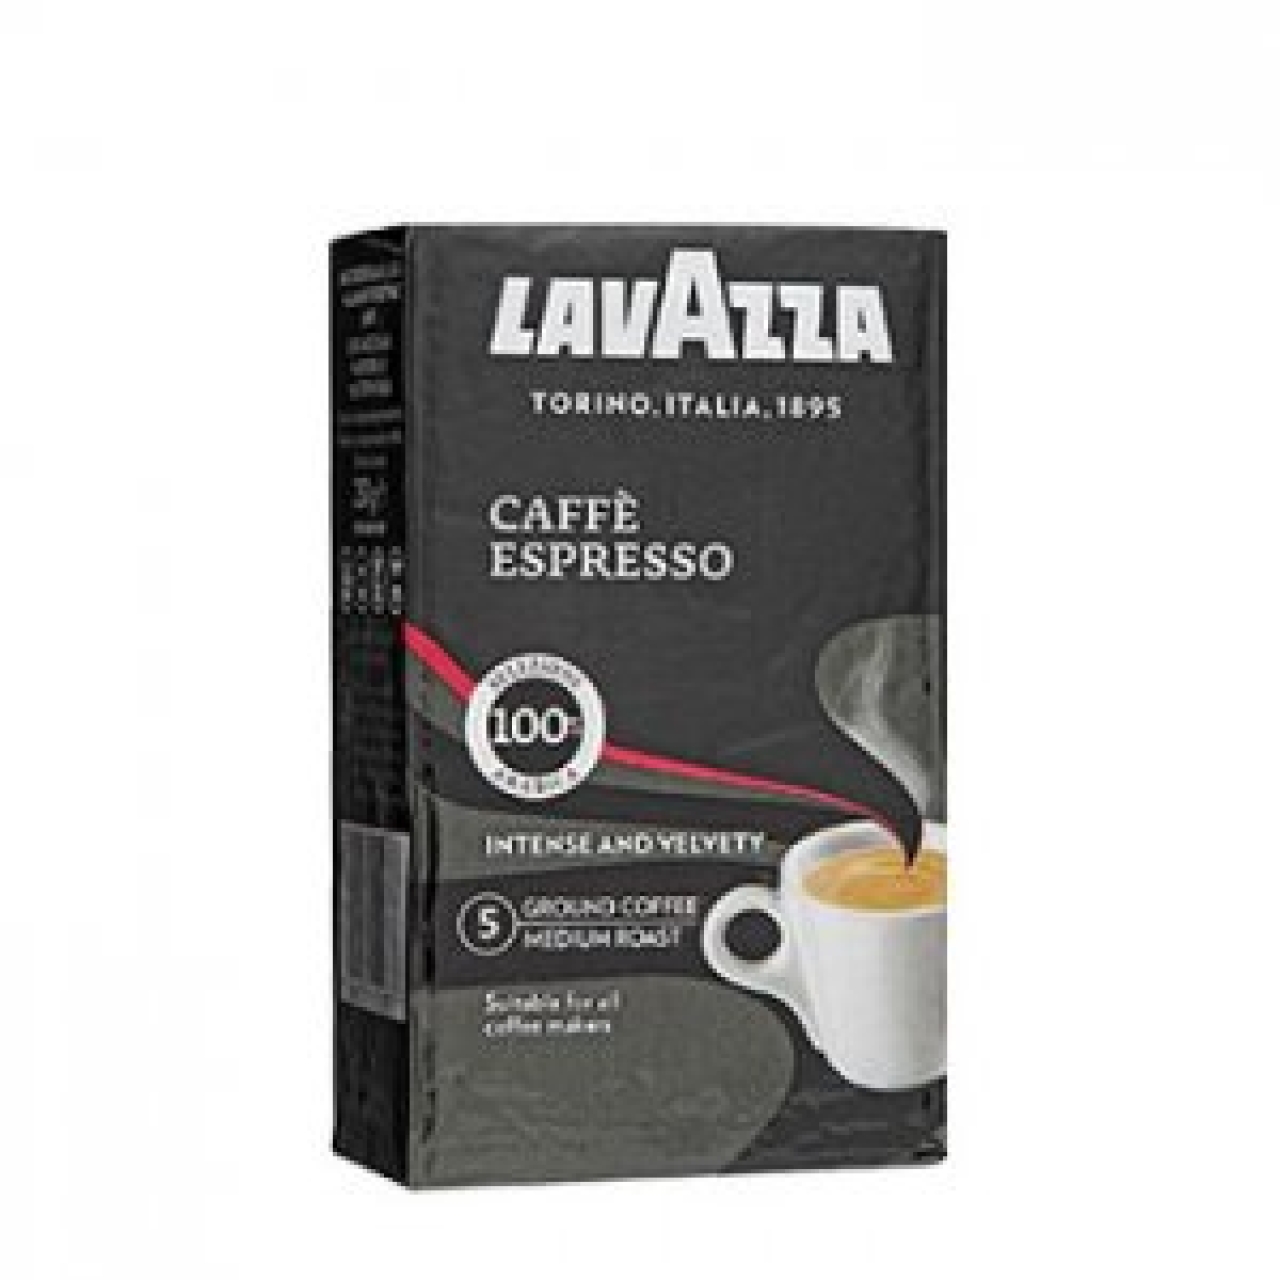 بسته قهوه لاواتزا مدل Espresso مقدار 250 گرم